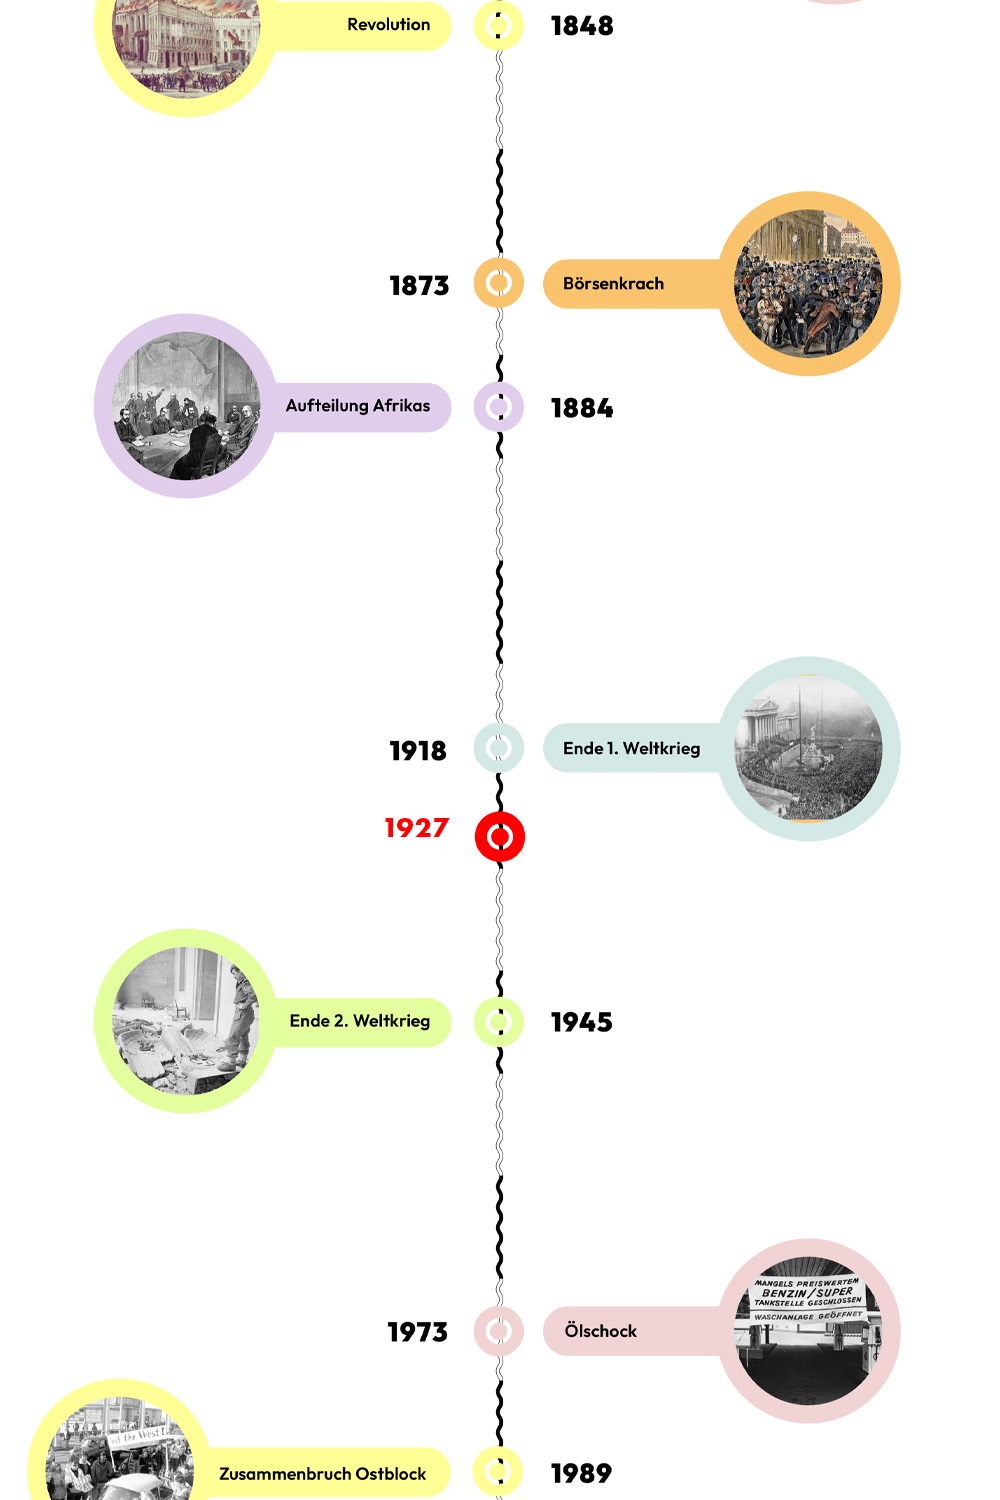 Zeitstrahl mit historischen Ereignissen - 1927 ist hervorgehoben. © wasbishergeschah.at